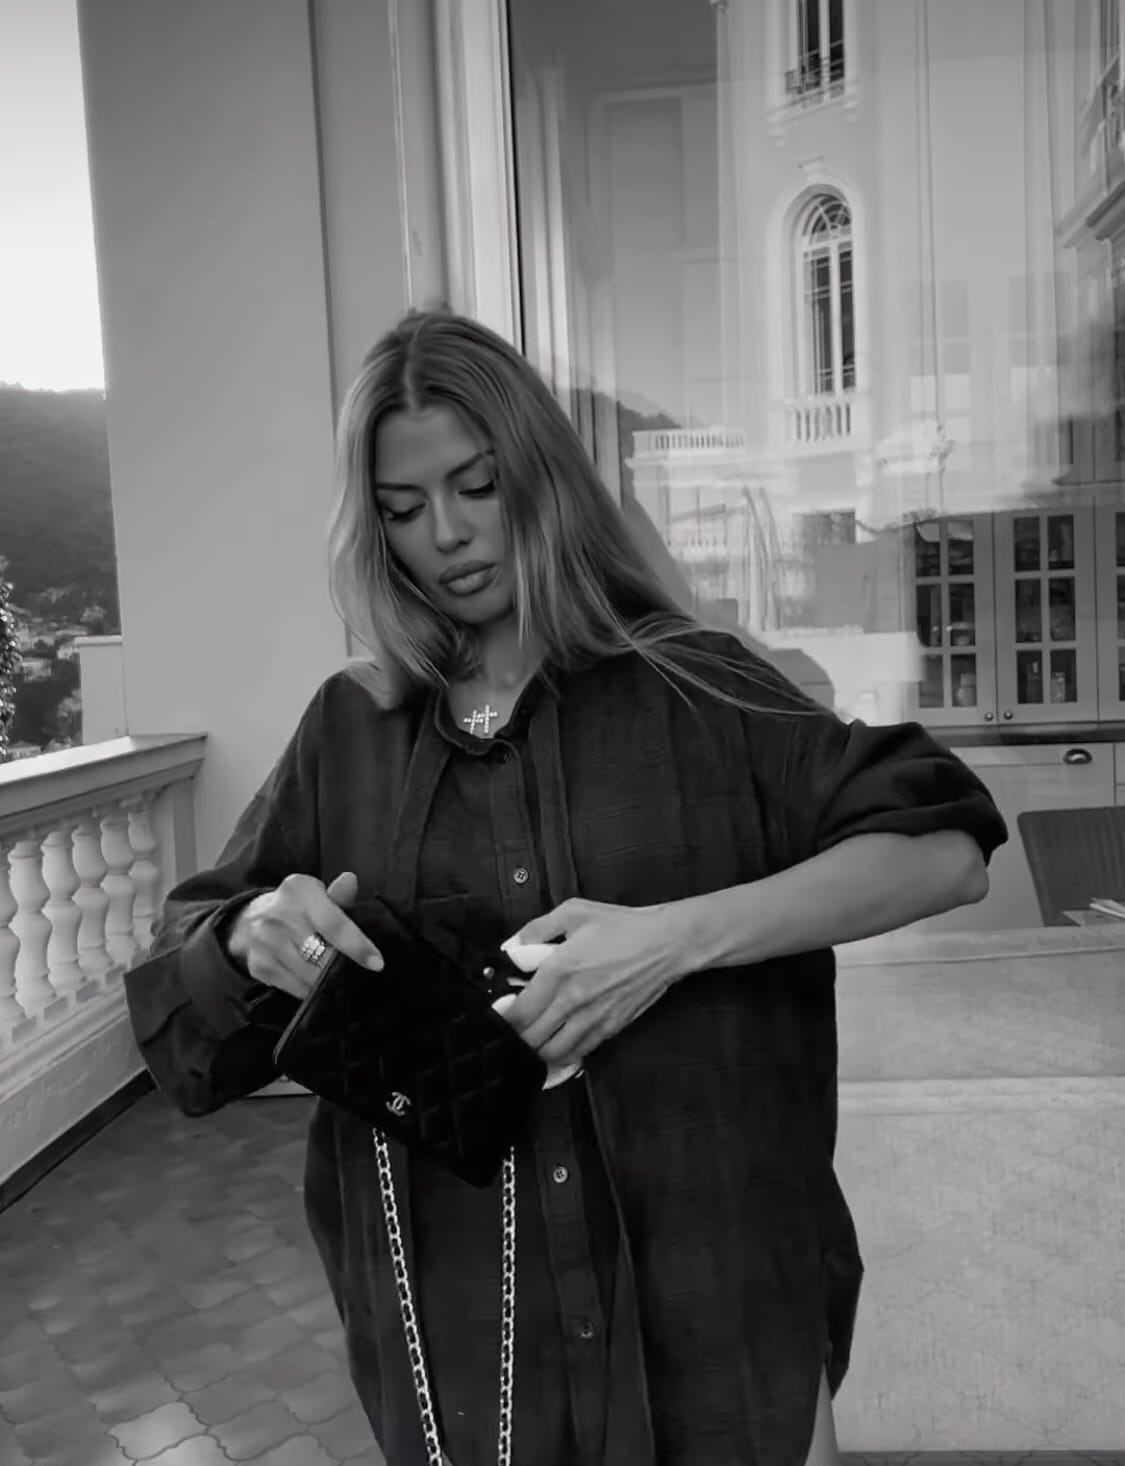 Виктория Боня покромсала сумку Chanel в знак протеста
